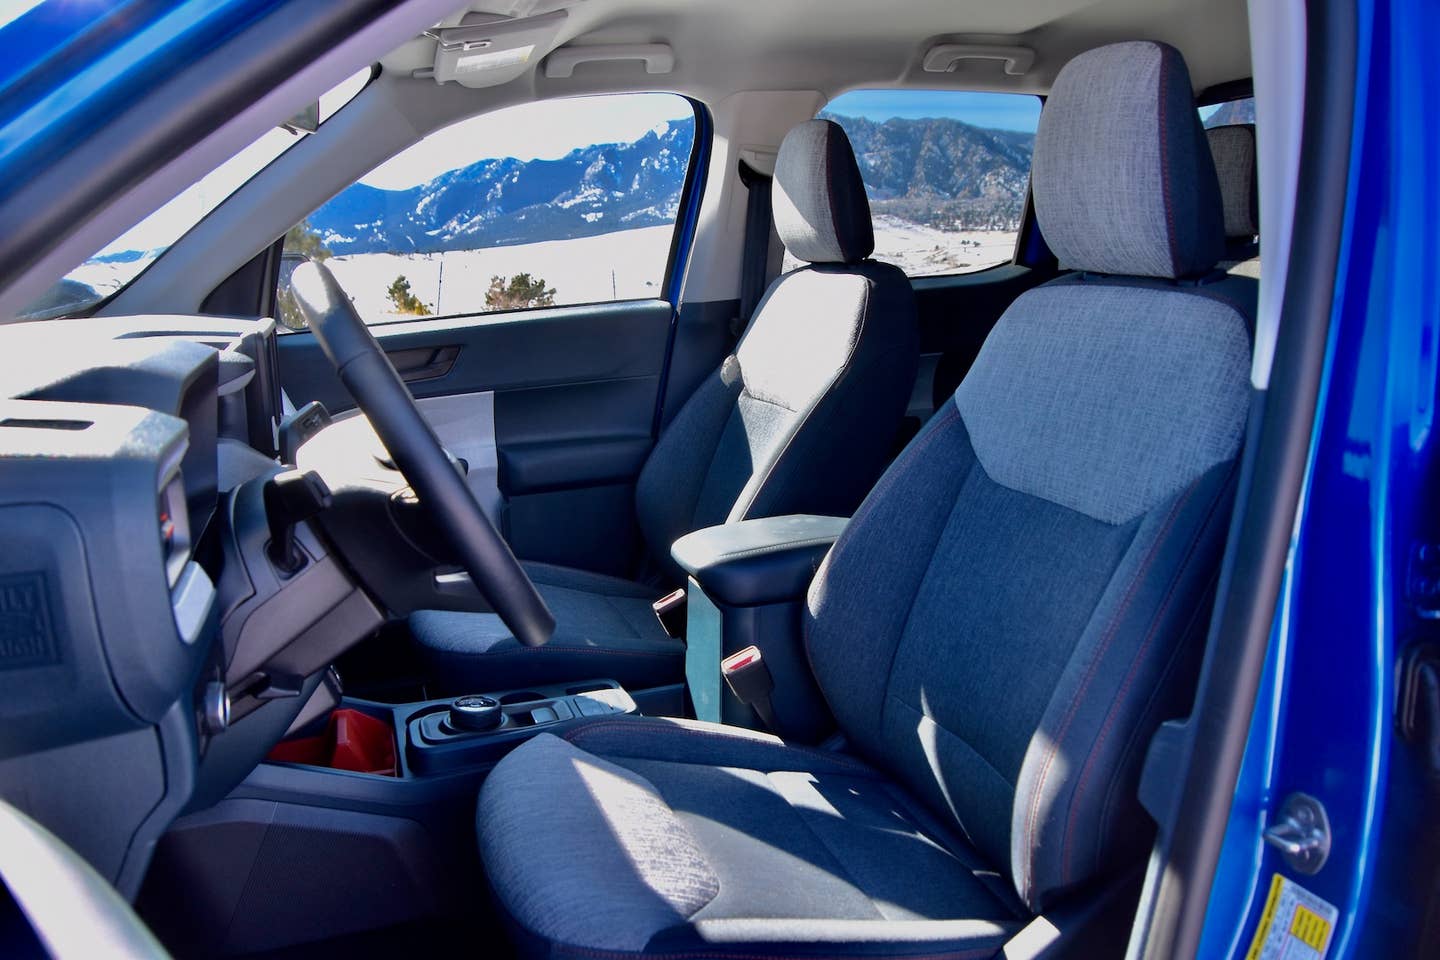 2022 Ford Maverick hybrid interior